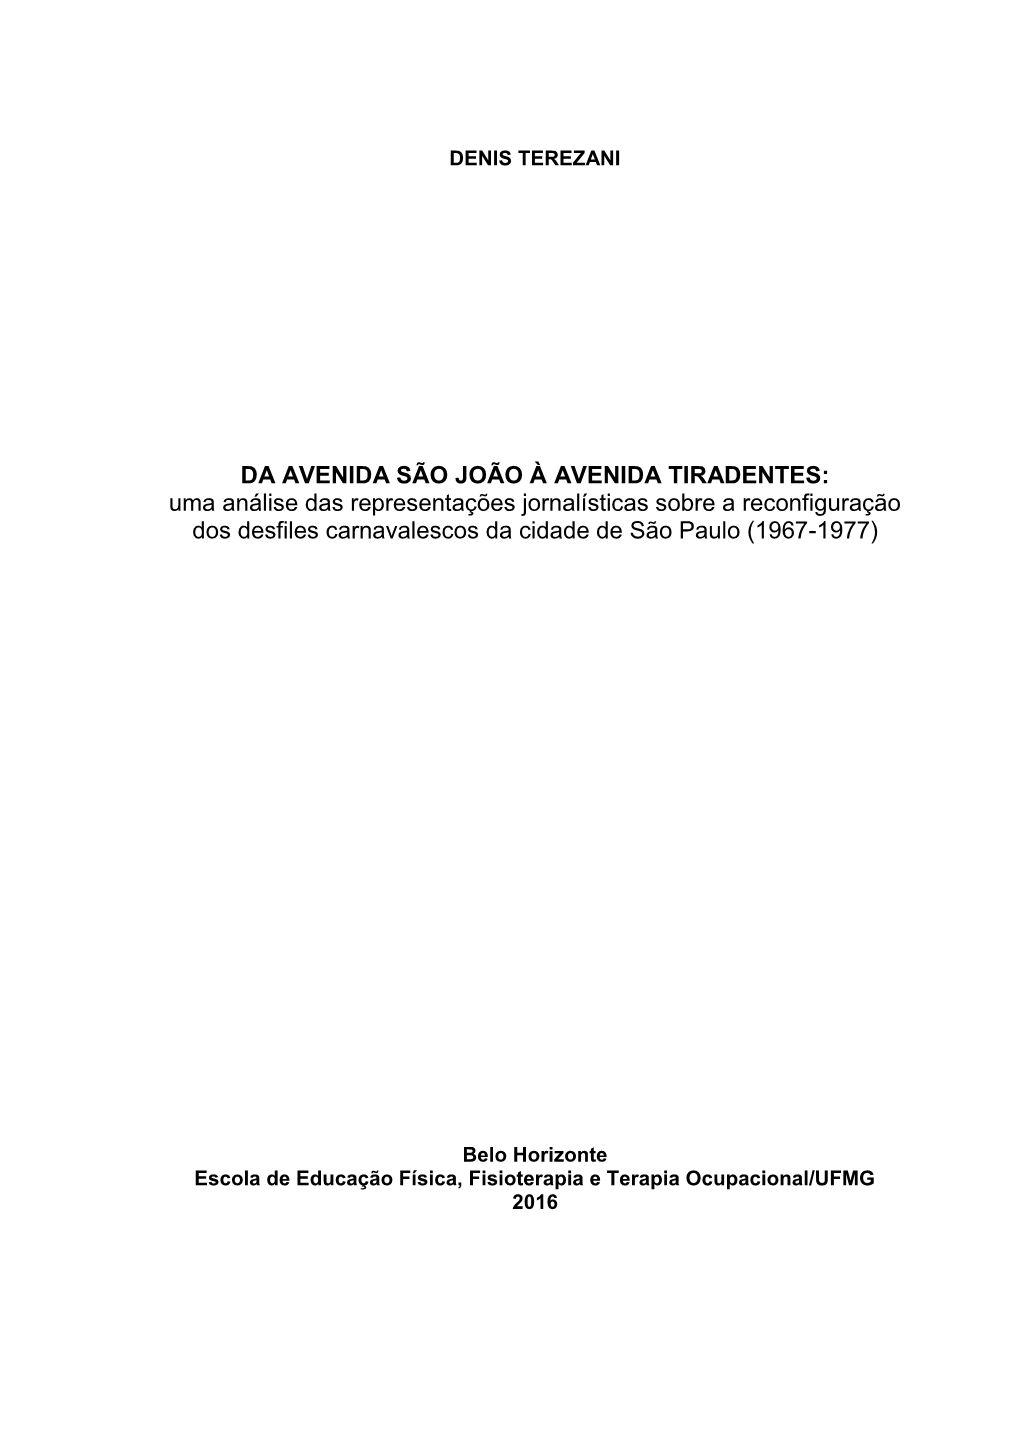 Uma Análise Das Representações Jornalísticas Sobre a Reconfiguração Dos Desfiles Carnavalescos Da Cidade De São Paulo (1967-1977)